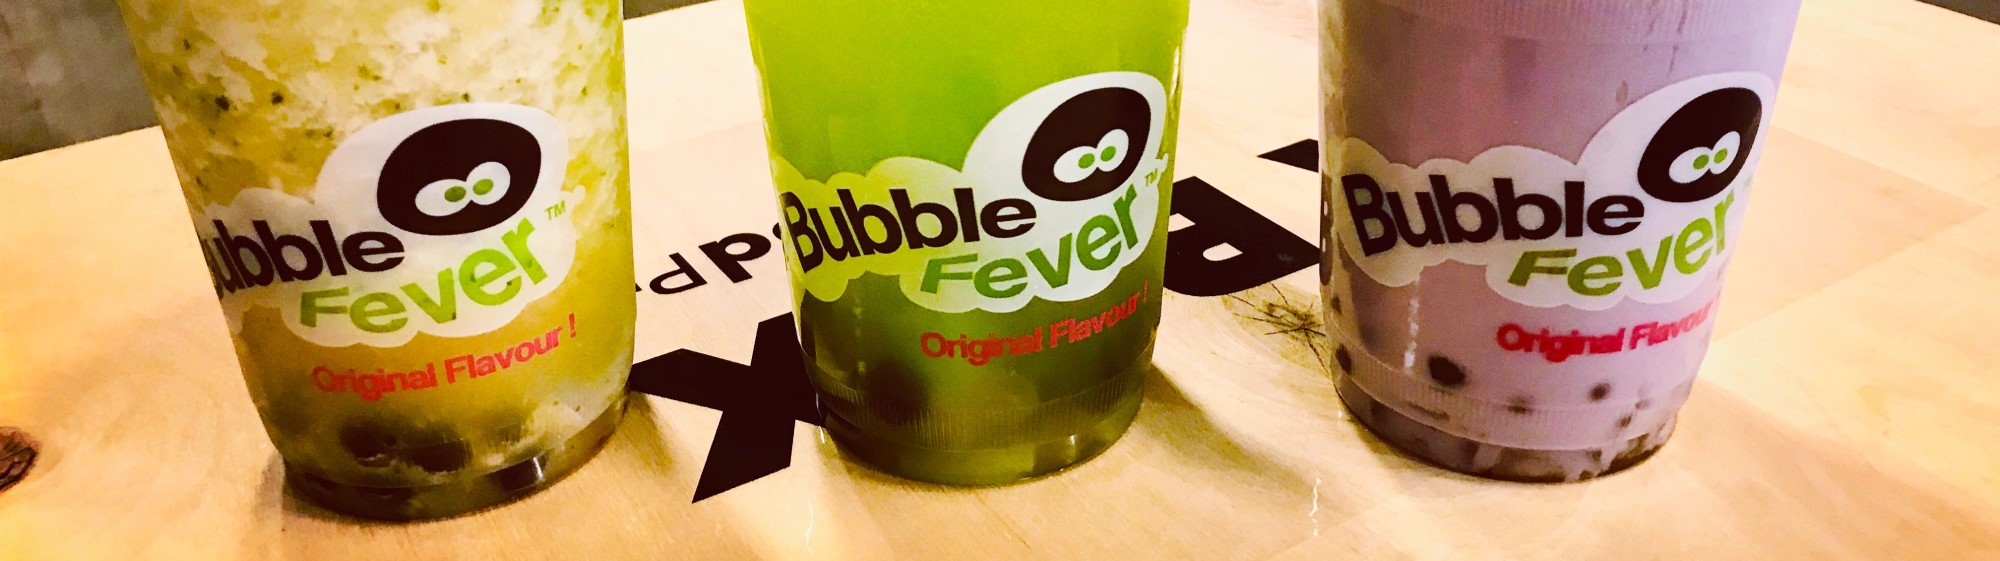 bubble tea bubble fever